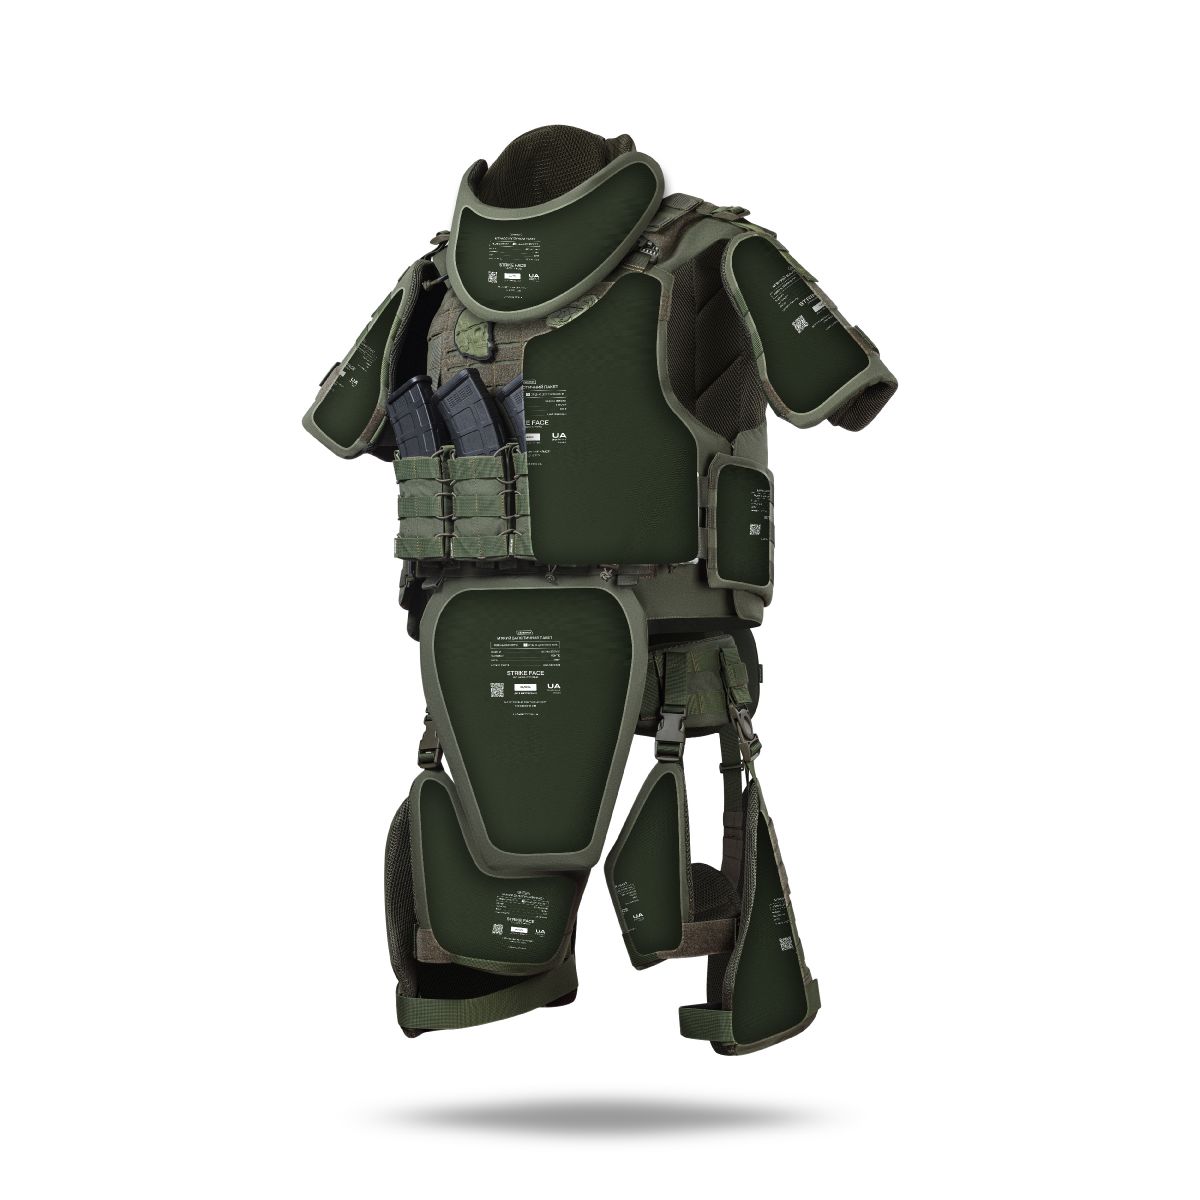 Бронекостюм A.T.A.S. (Advanced Tactical Armor Suit) Level I. Класс защиты – 1. Олива. L/XL 2